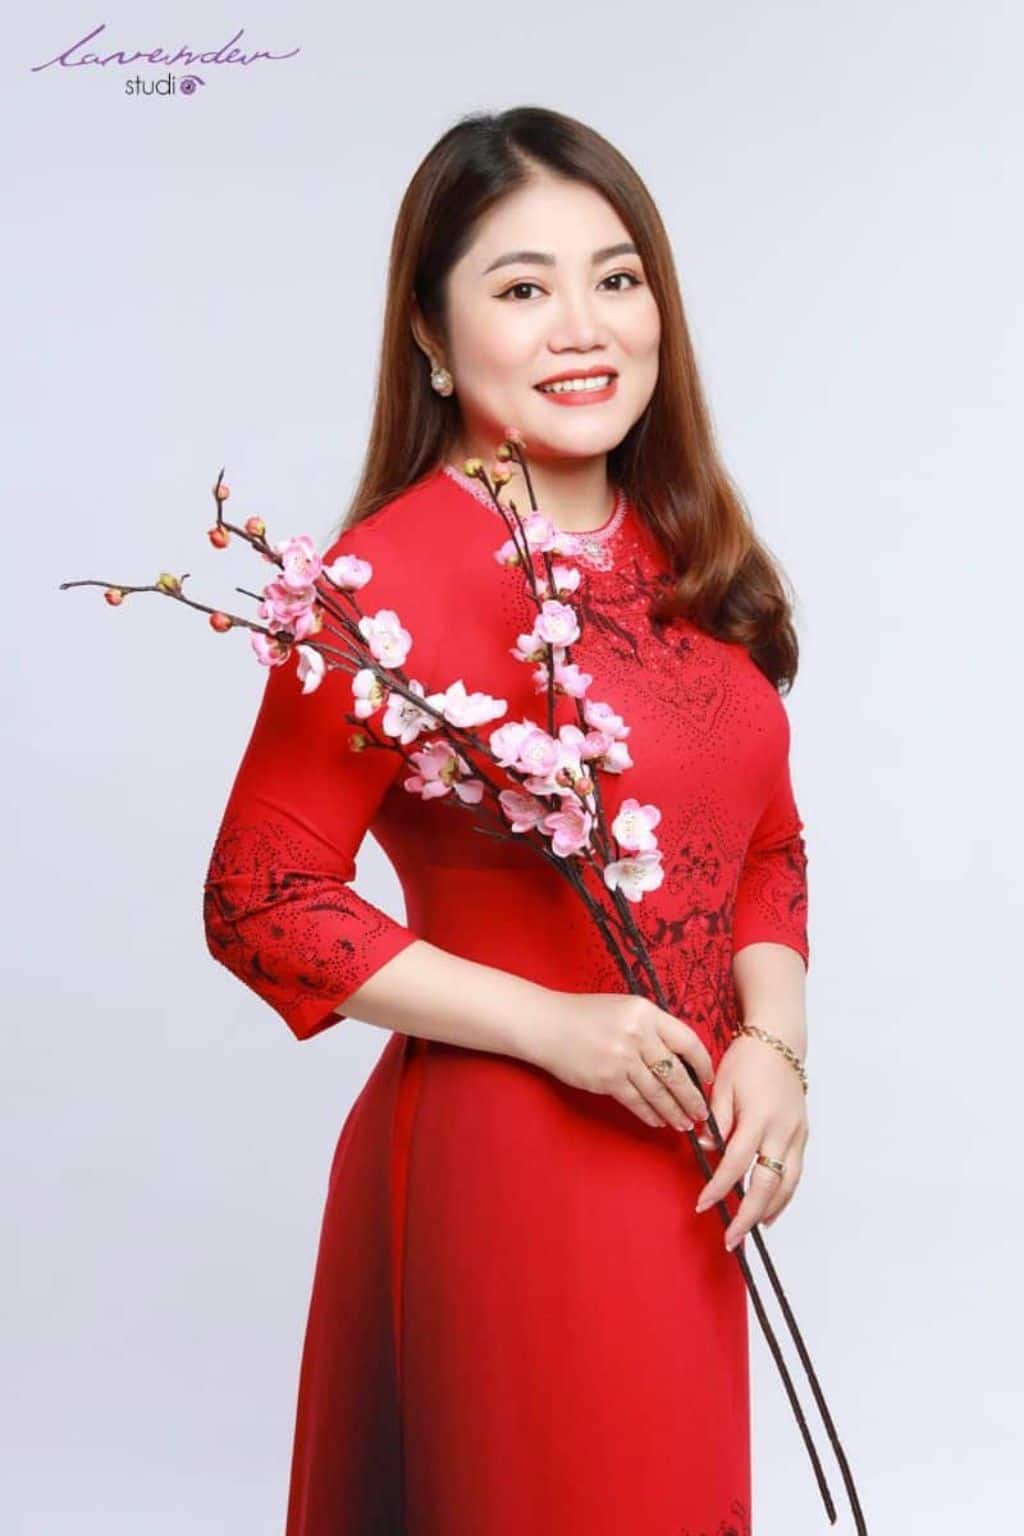 Áo dài - trang phục truyền thống của dân tộc Việt Nam